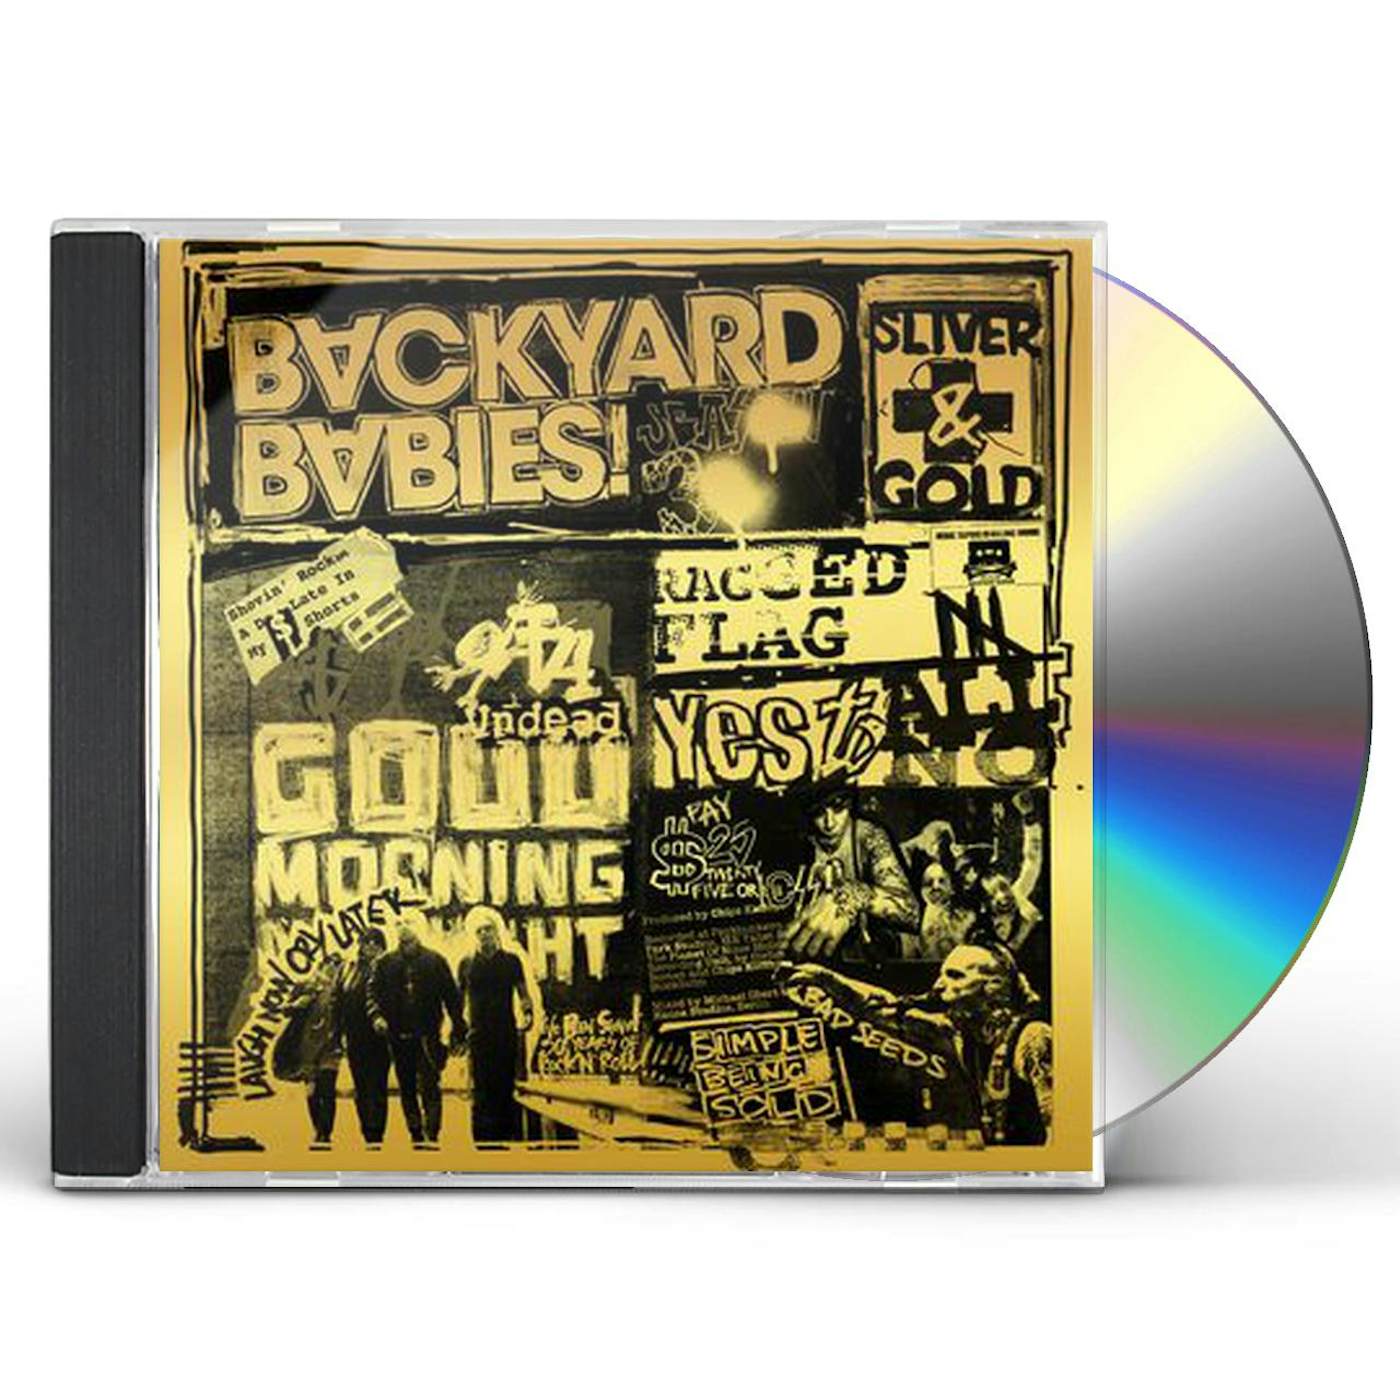 Backyard Babies SLIVER & GOLD CD